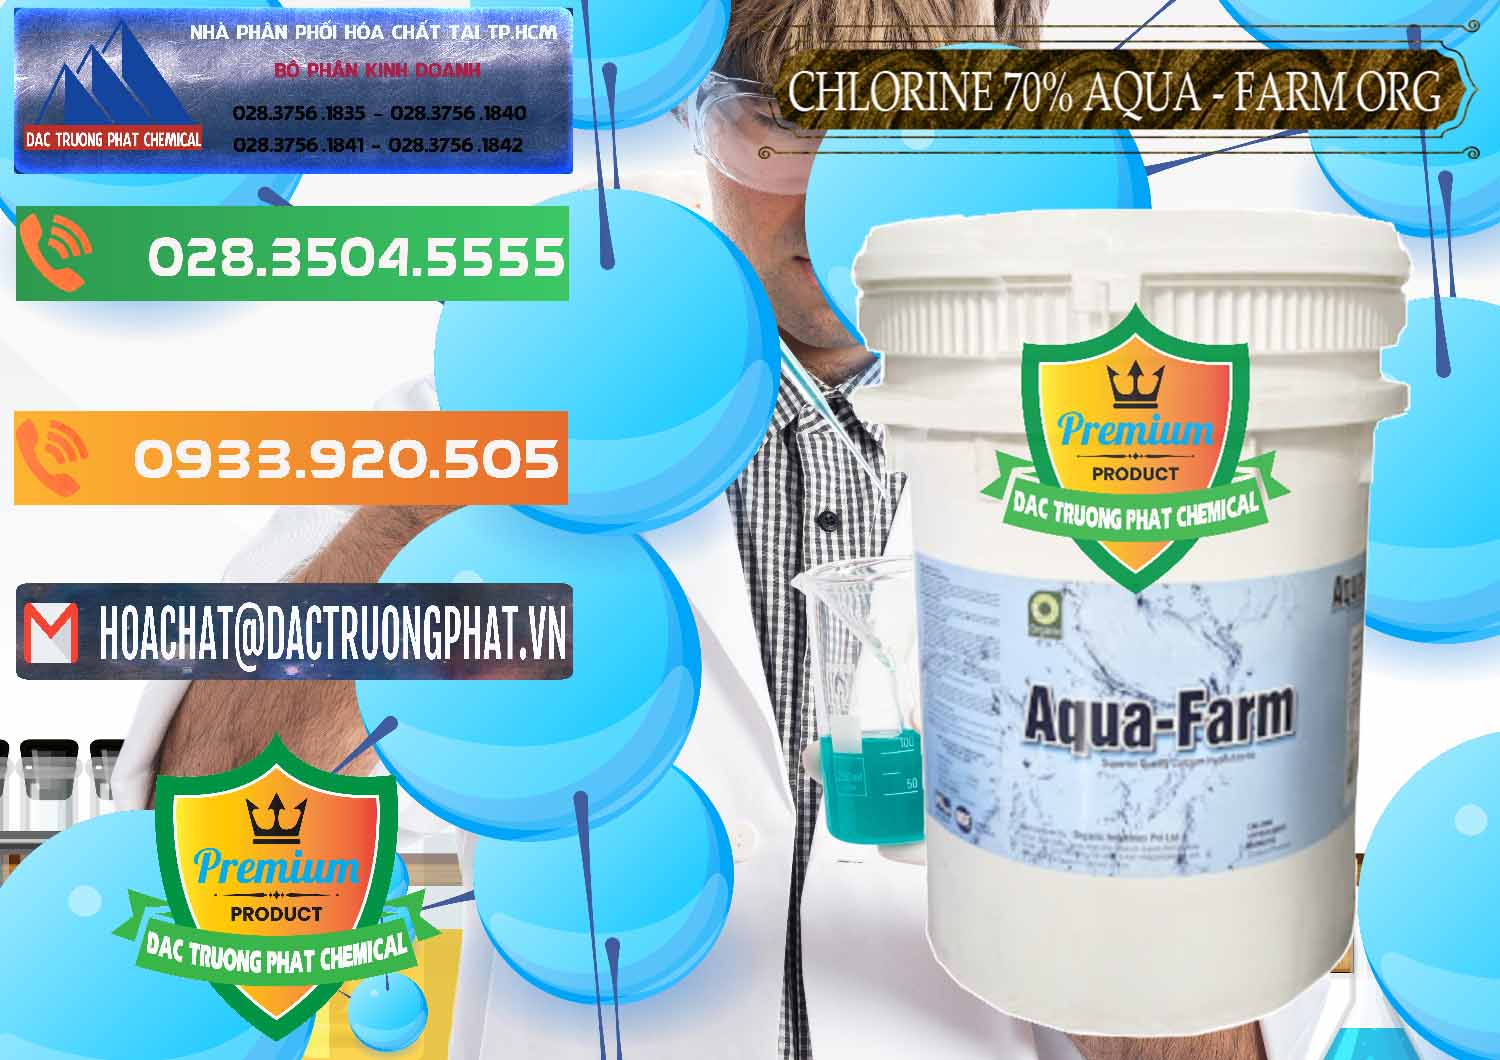 Đơn vị kinh doanh và bán Chlorine – Clorin 70% Aqua - Farm ORG Organic Ấn Độ India - 0246 - Nơi phân phối & cung ứng hóa chất tại TP.HCM - hoachatxulynuoc.com.vn